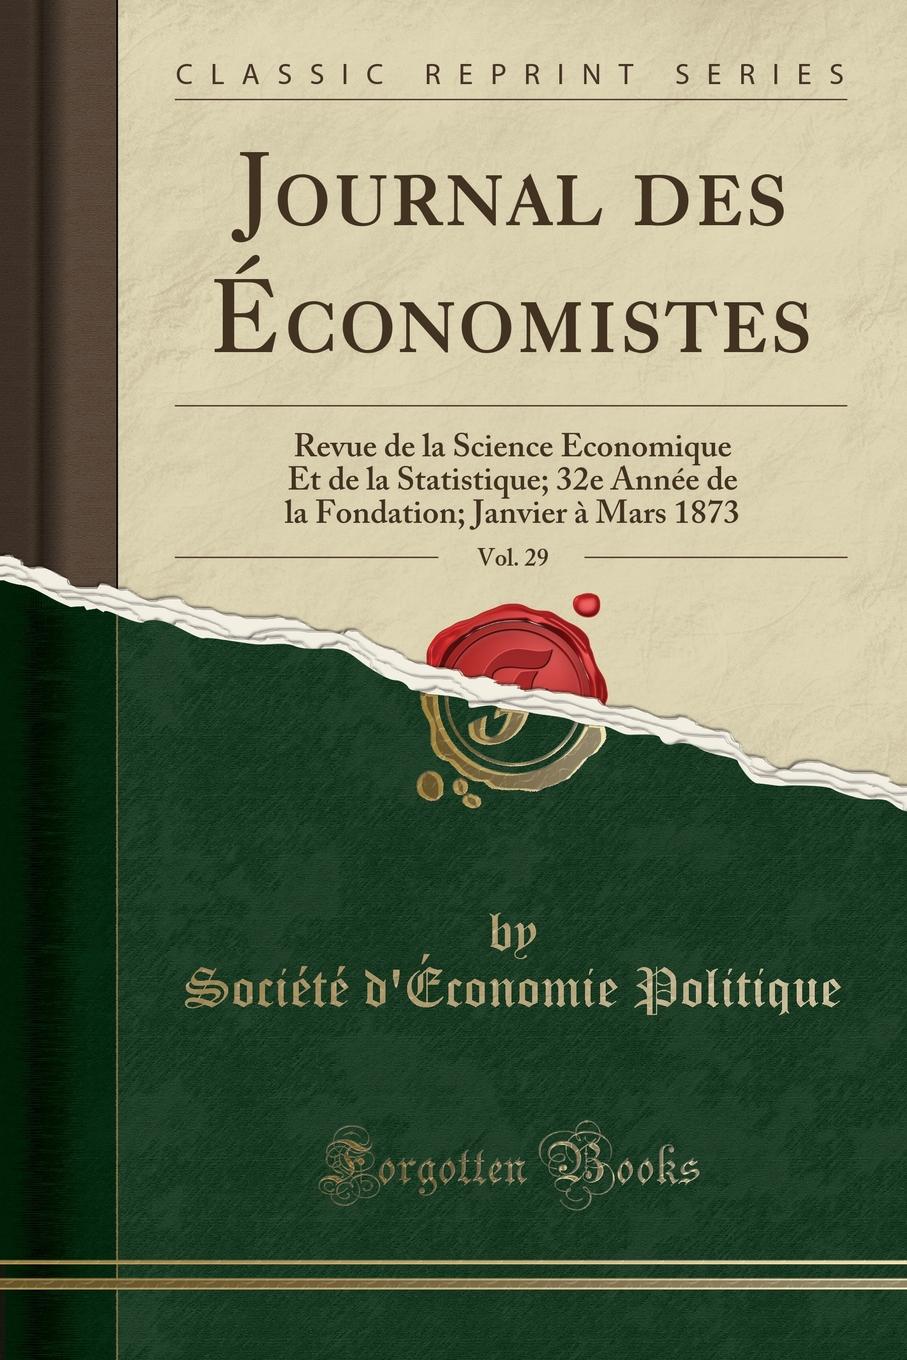 фото Journal des Economistes, Vol. 29. Revue de la Science Economique Et de la Statistique; 32e Annee de la Fondation; Janvier a Mars 1873